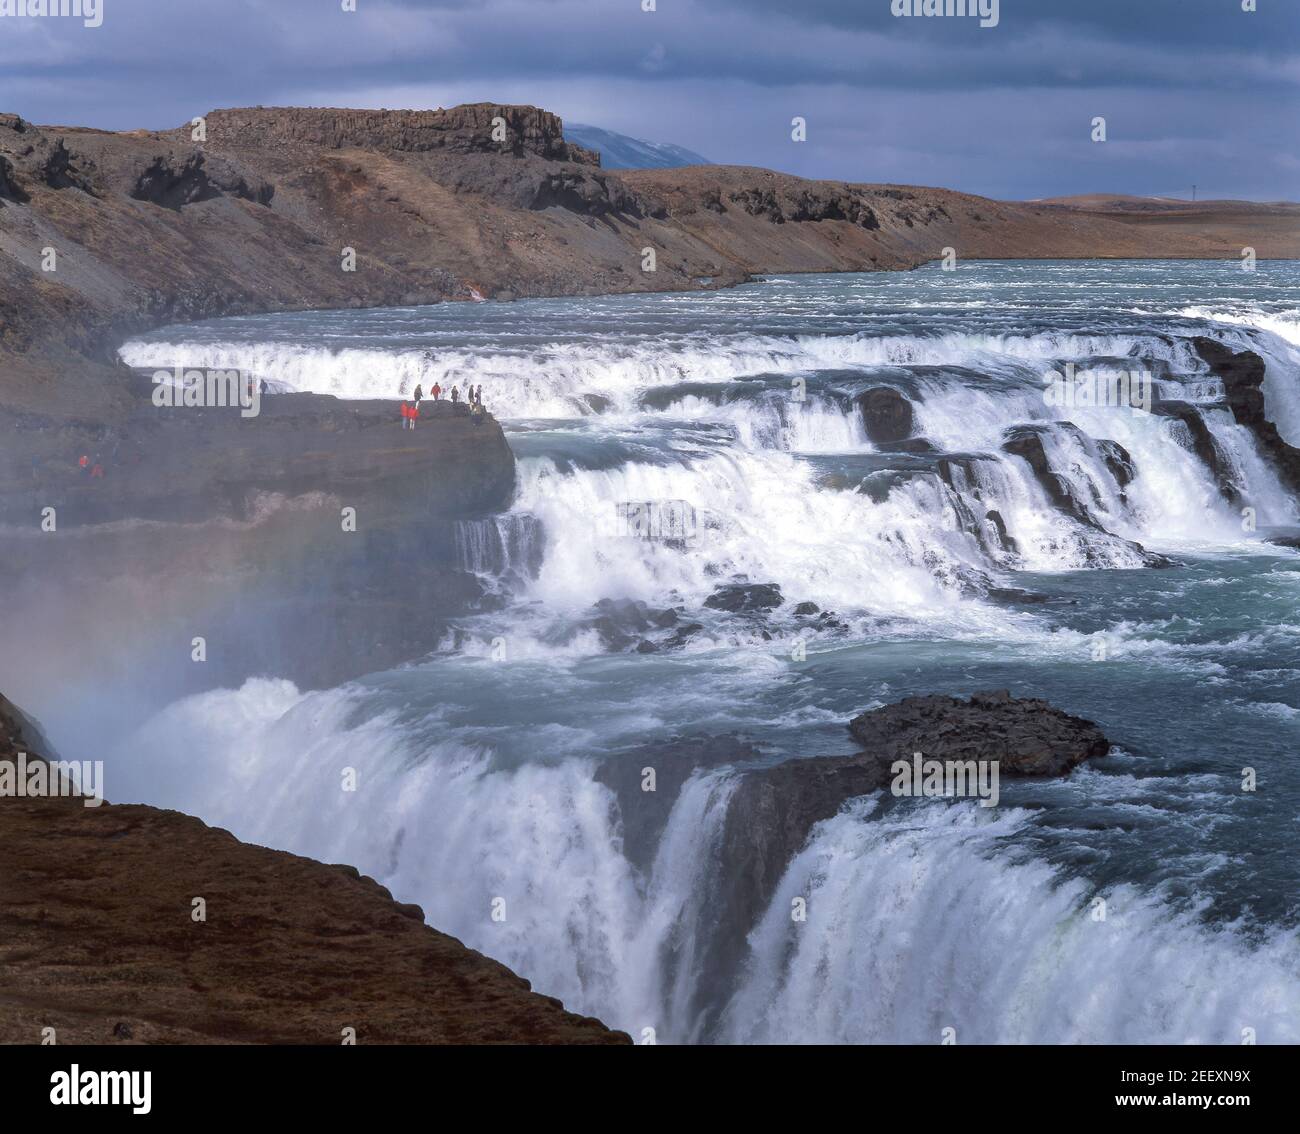 Chute d'eau de Gullfoss, Canyon de Hvítá, région du Sud-Ouest, République d'Islande Banque D'Images